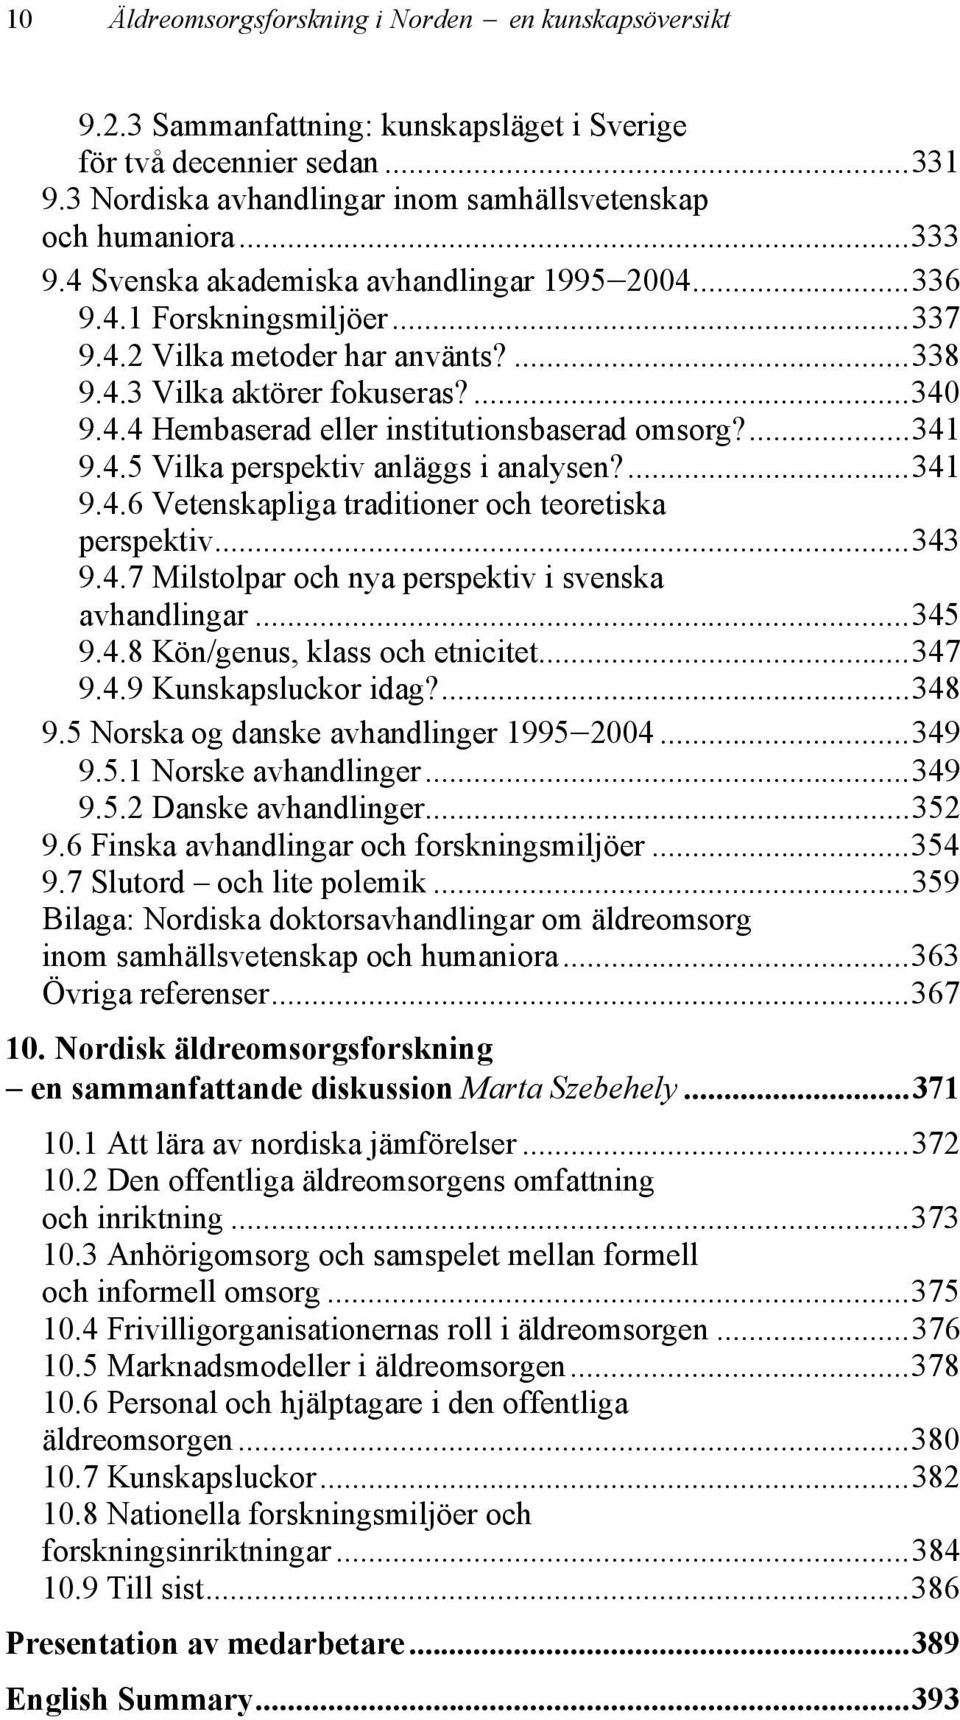 ...341 9.4.5 Vilka perspektiv anläggs i analysen?...341 9.4.6 Vetenskapliga traditioner och teoretiska perspektiv...343 9.4.7 Milstolpar och nya perspektiv i svenska avhandlingar...345 9.4.8 Kön/genus, klass och etnicitet.